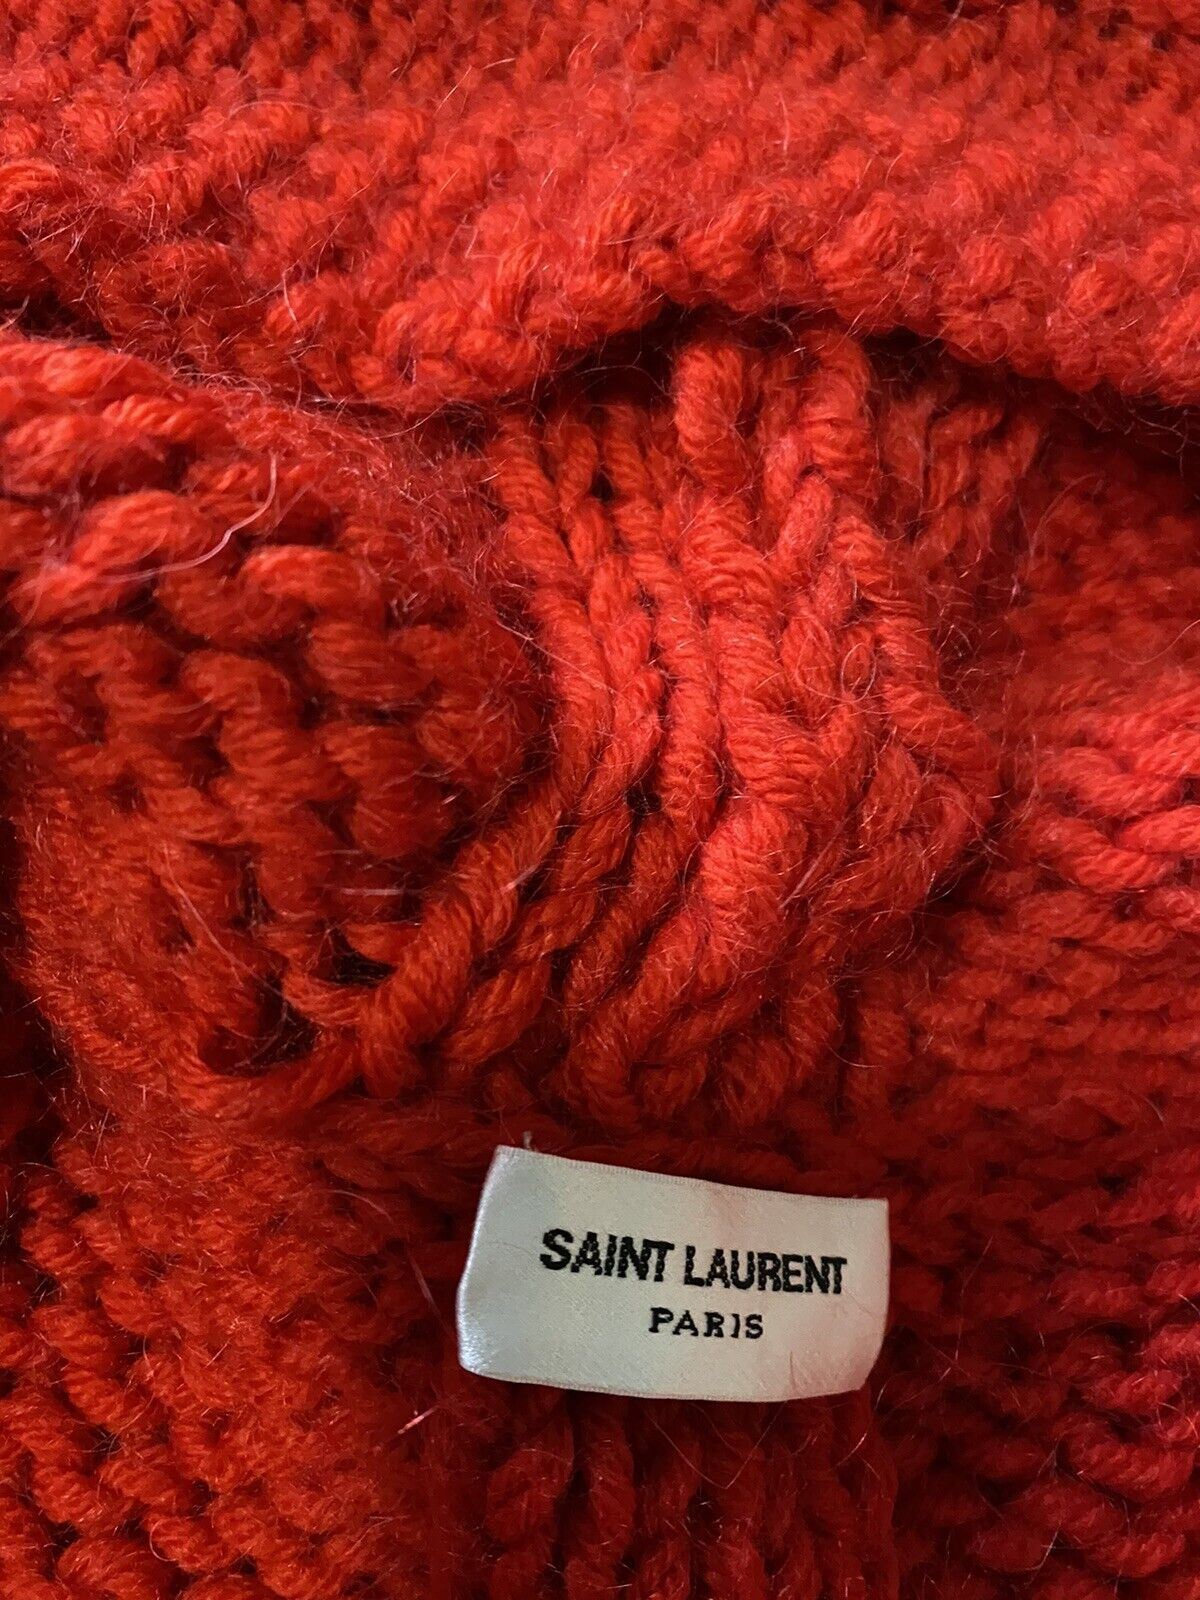 NWT $1190 Saint Laurent Мужской кардиган вязанной вязки с капюшоном Красный S Италия